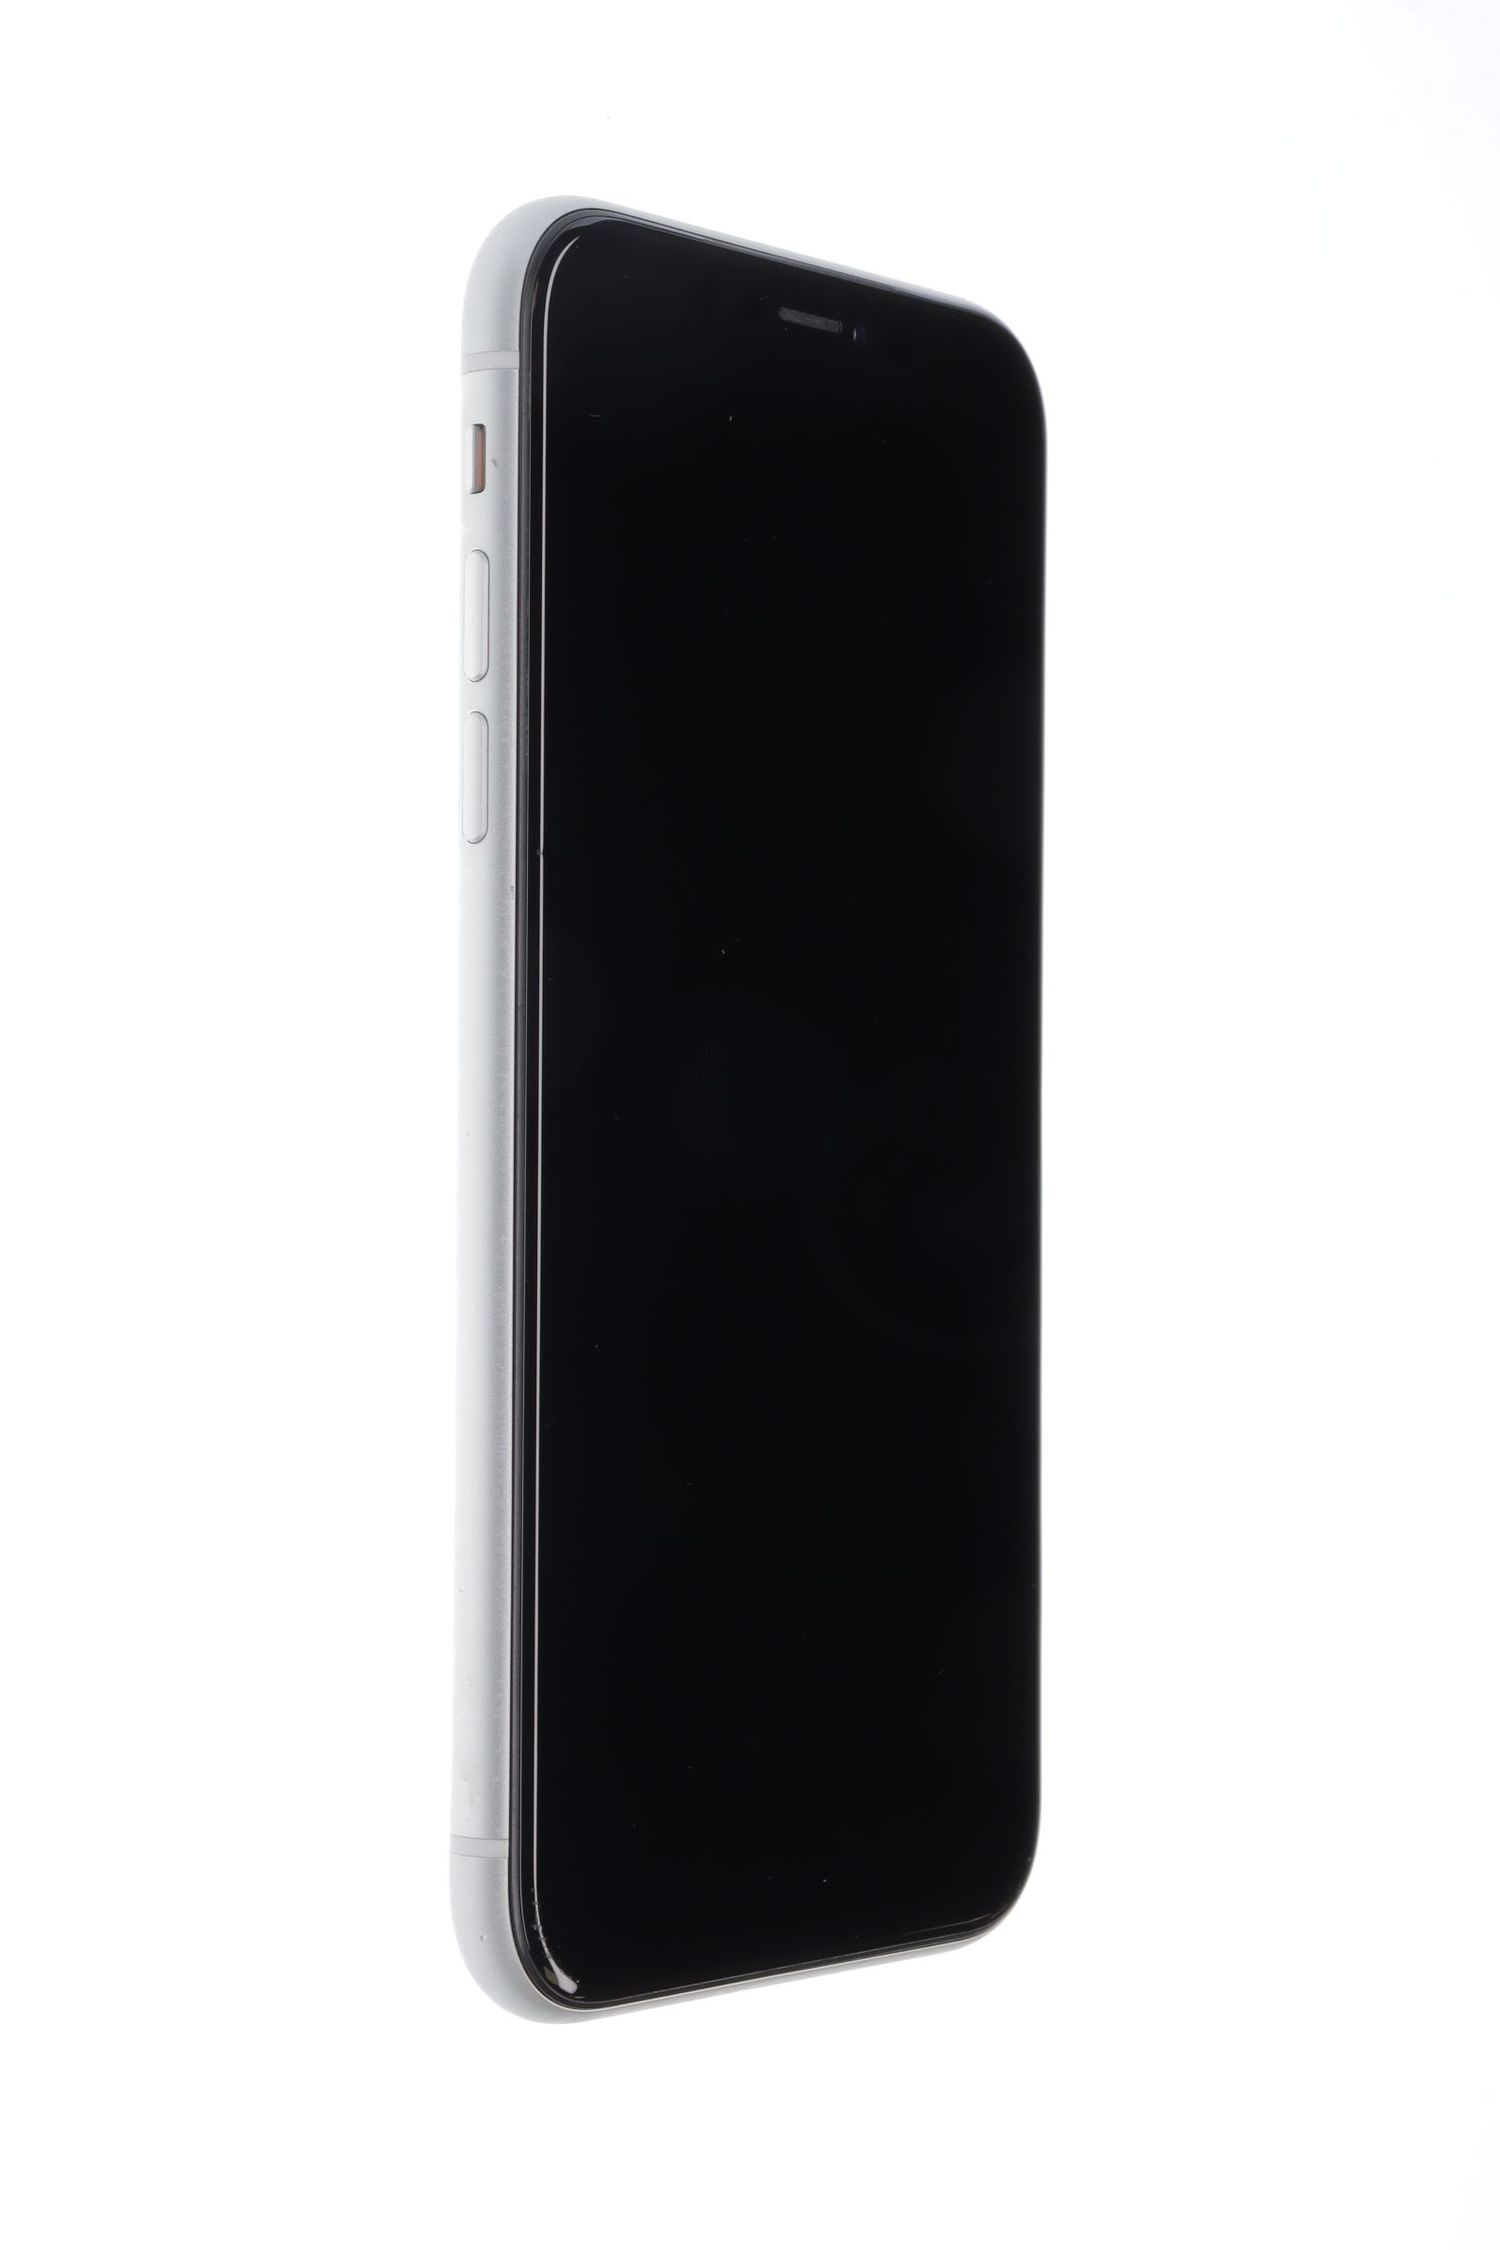 Κινητό τηλέφωνο Apple iPhone XR, White, 128 GB, Excelent